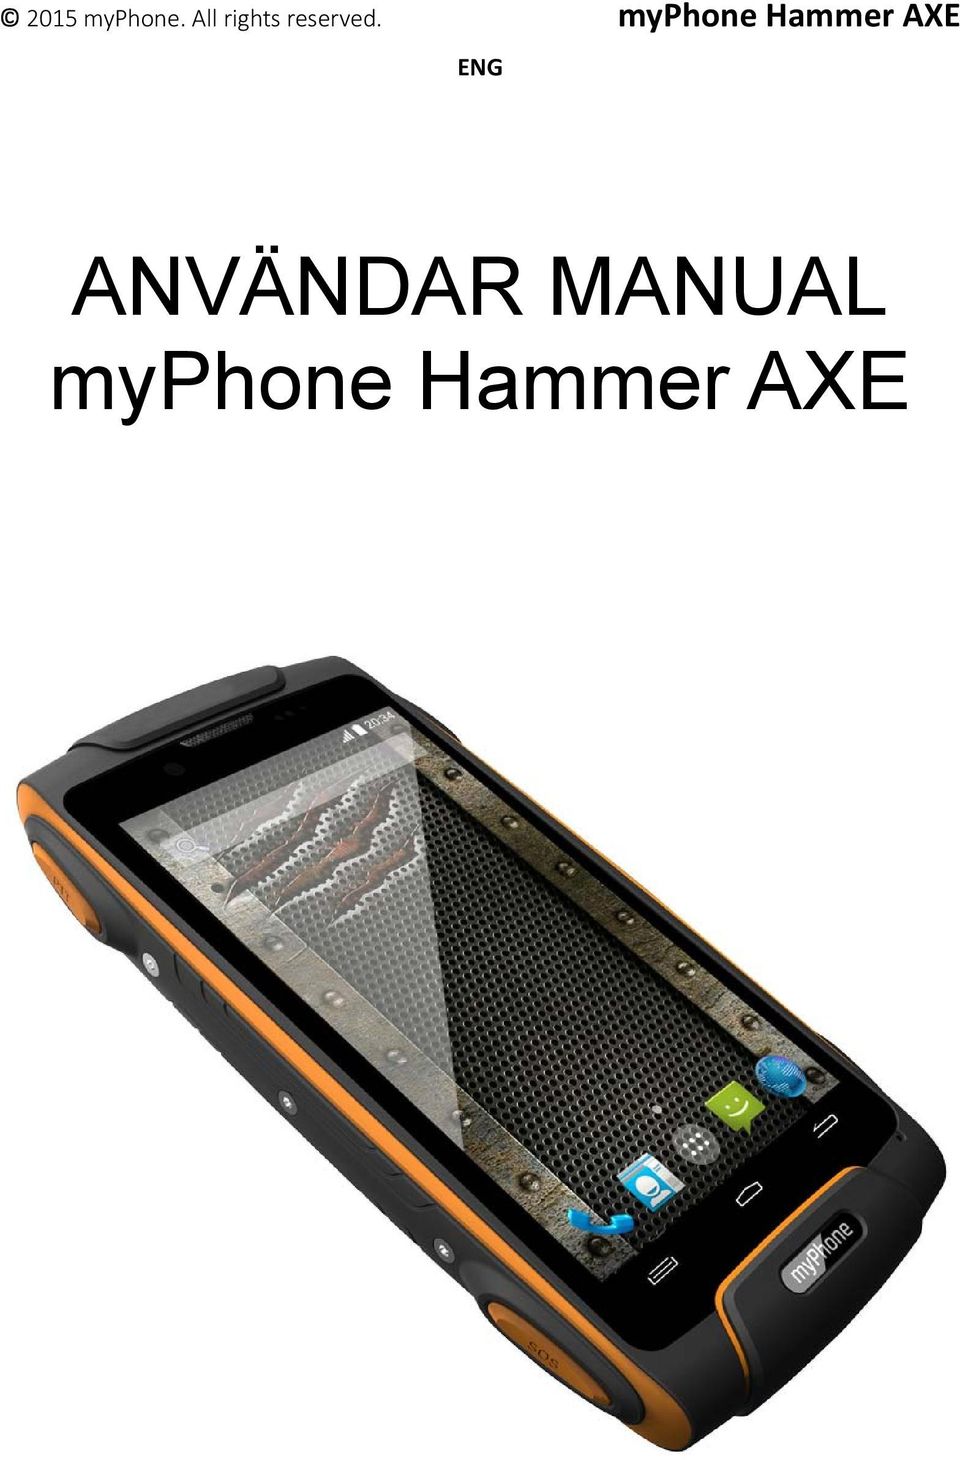 myphone Hammer AXE ENG